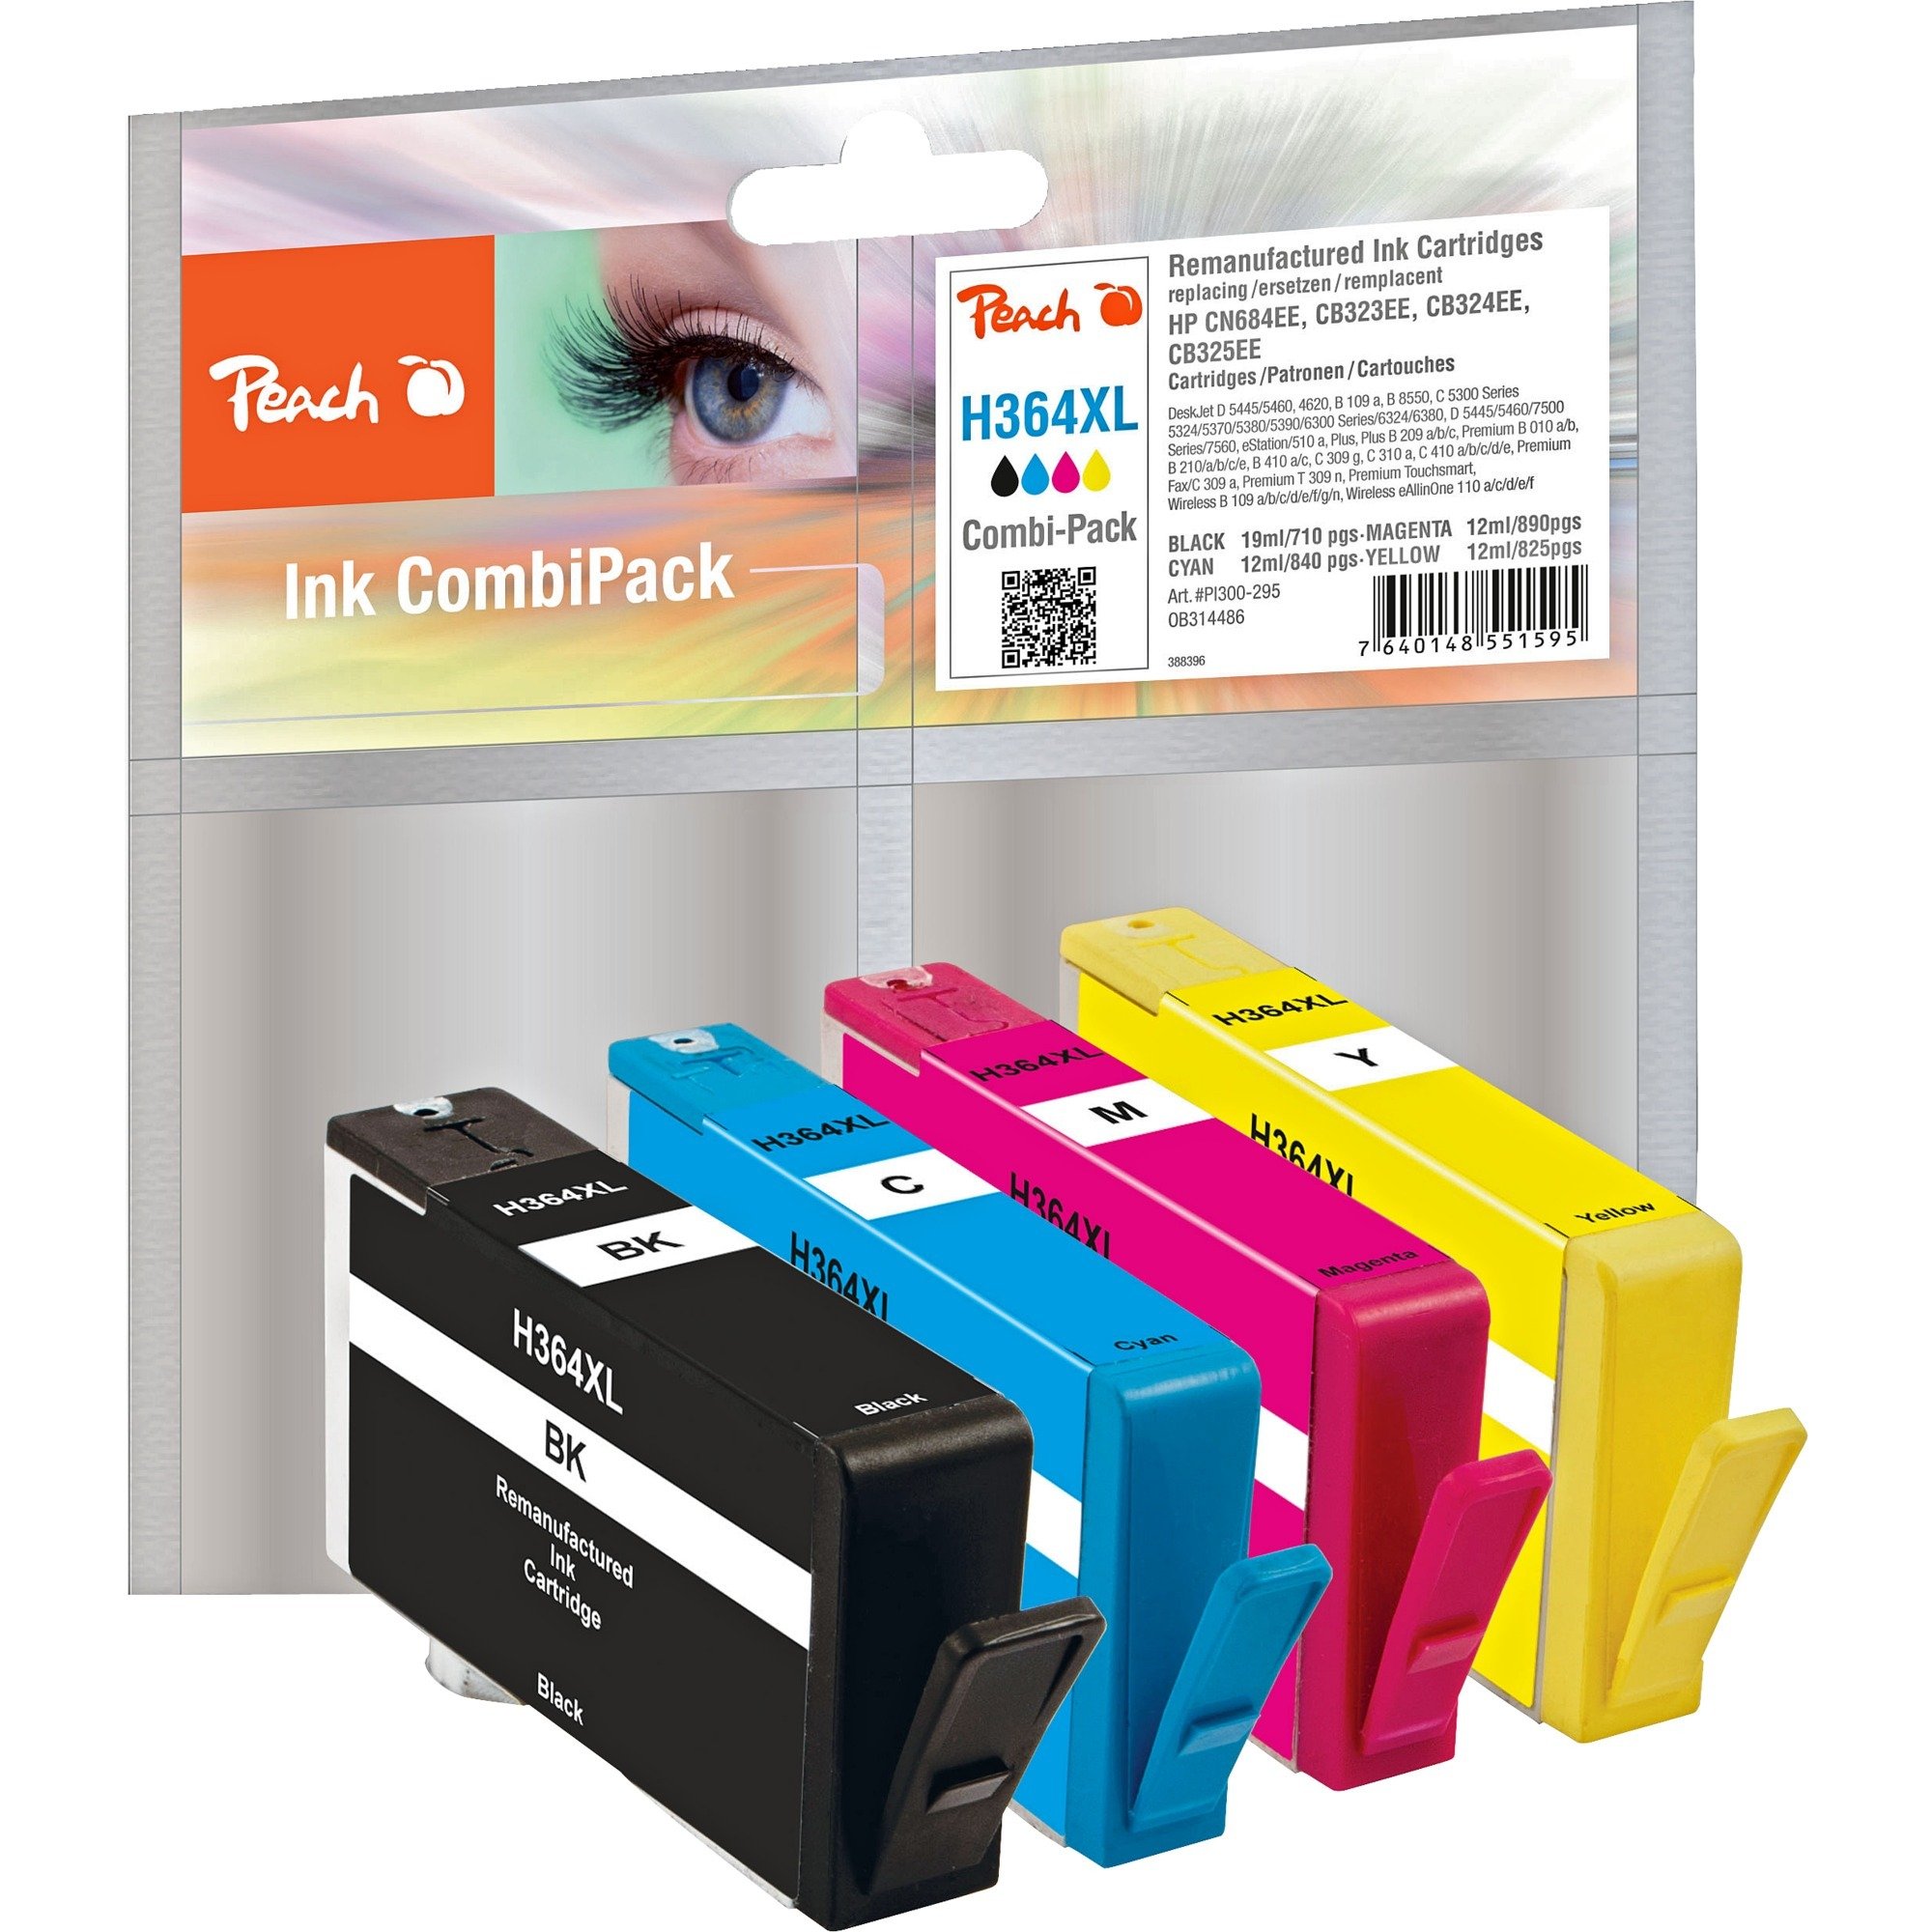 Image of Alternate - Tinte Spar Pack PI300-295 online einkaufen bei Alternate